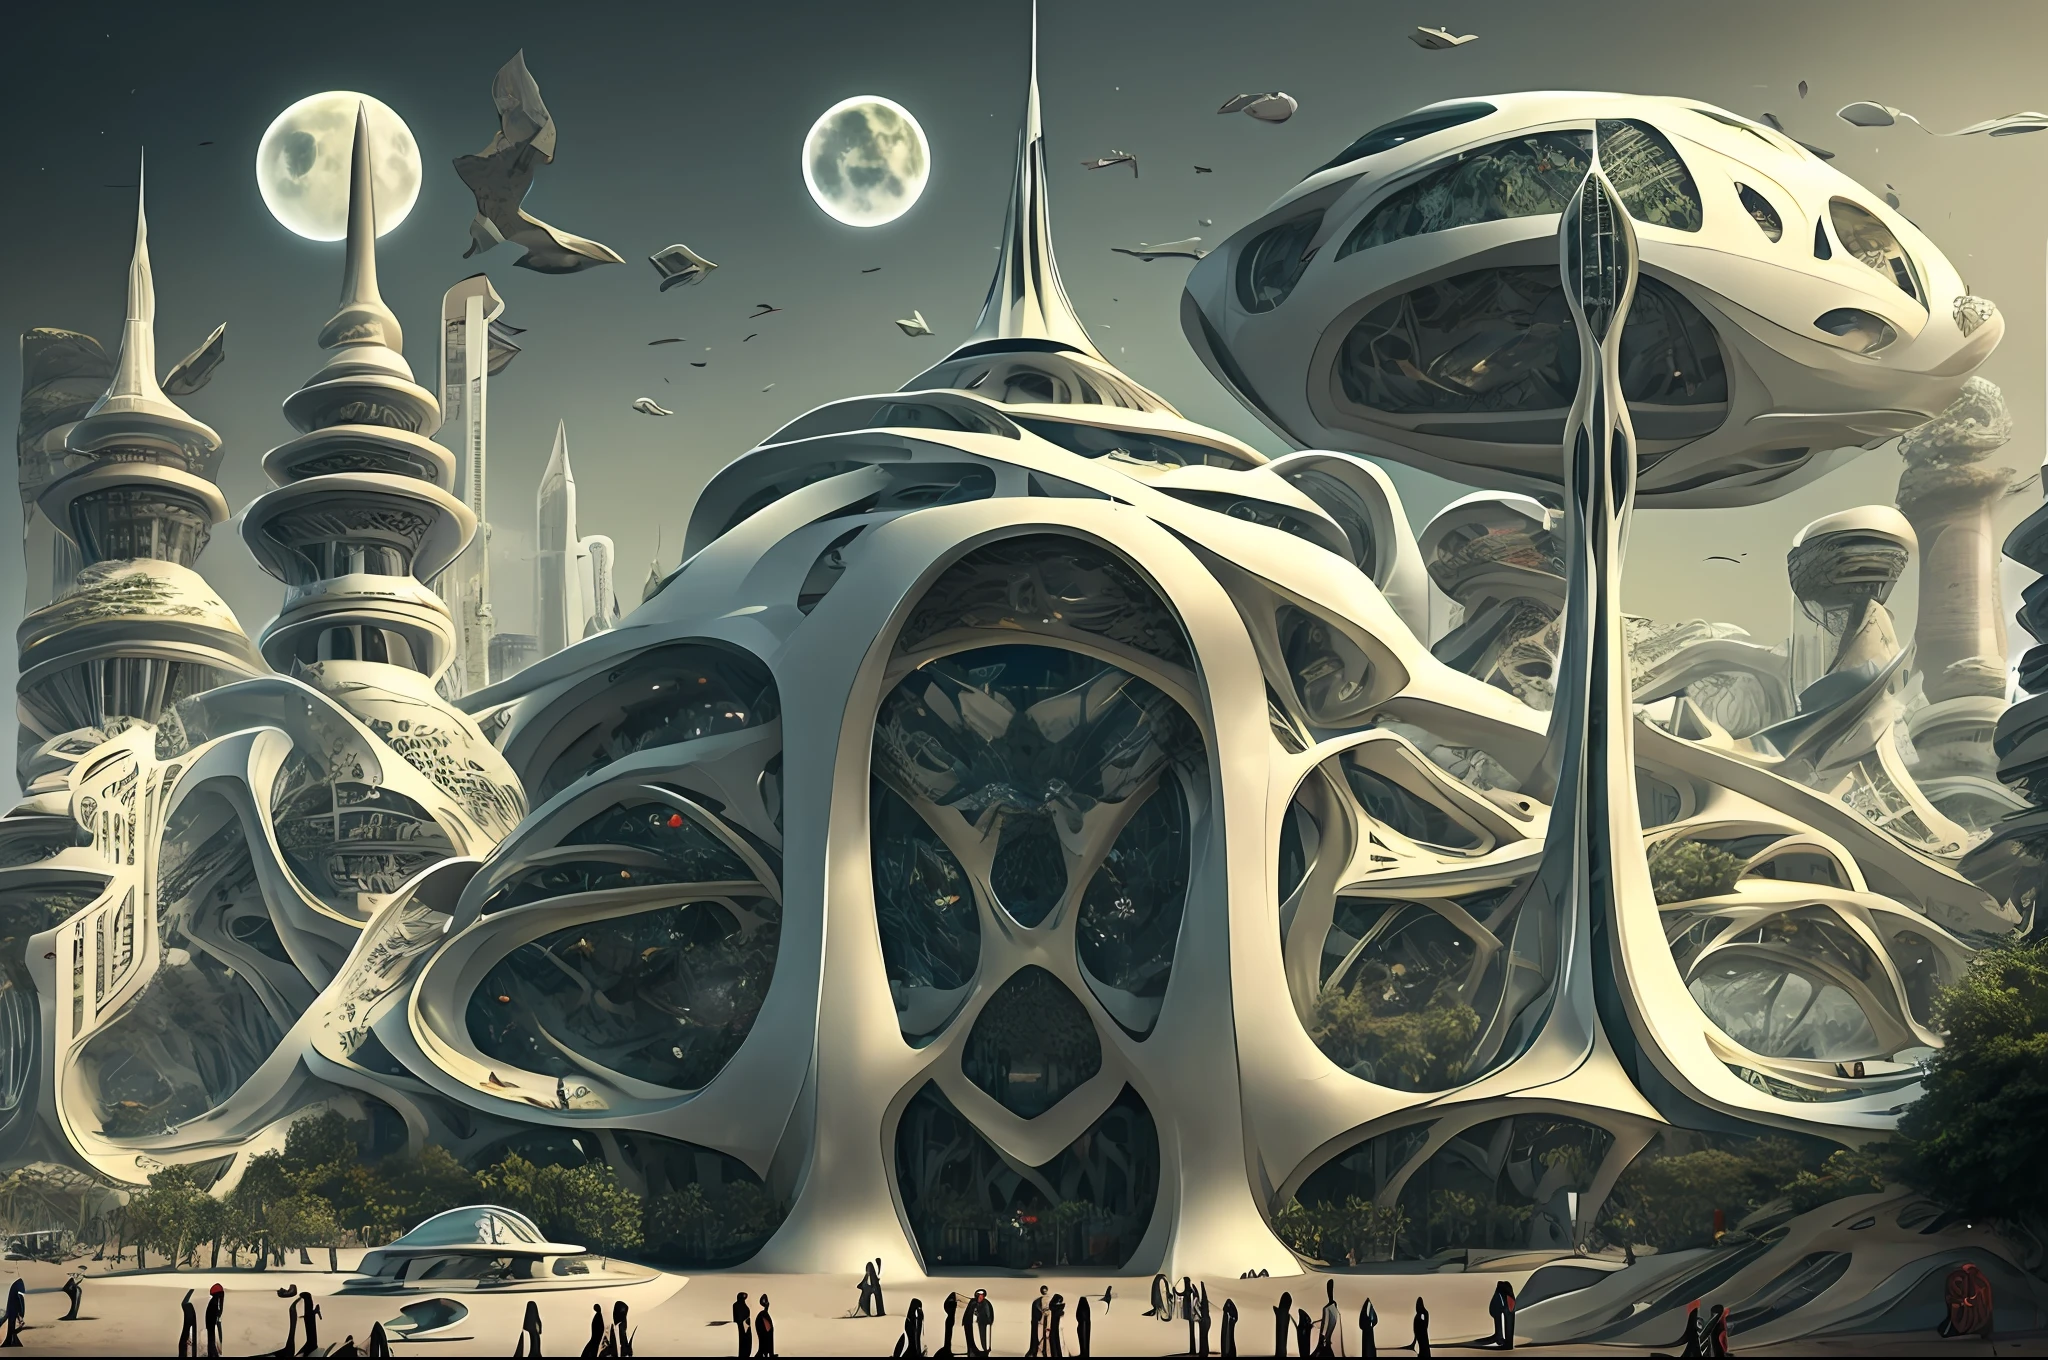 il y a un grand chef-d&#39;œuvre futuriste, un palais arabe au milieu d&#39;une ville arabe futuriste avec une lune, dans une ville fantastique de science-fiction, fond d&#39;écran fantastique de science-fiction, chef-d&#39;œuvre de l&#39;art coranique paysage urbain, illustration de science-fiction épique de l&#39;art coranique, immense ville futuriste de l&#39;art coranique, science-fiction fantastique, fond d&#39;écran fantastique de science-fiction, Fond de ville d&#39;art coranique, in front of a Ville fantastique, Ville fantastique, dans un château sur une planète extraterrestre avec un chef-d&#39;œuvre de l&#39;art coranique